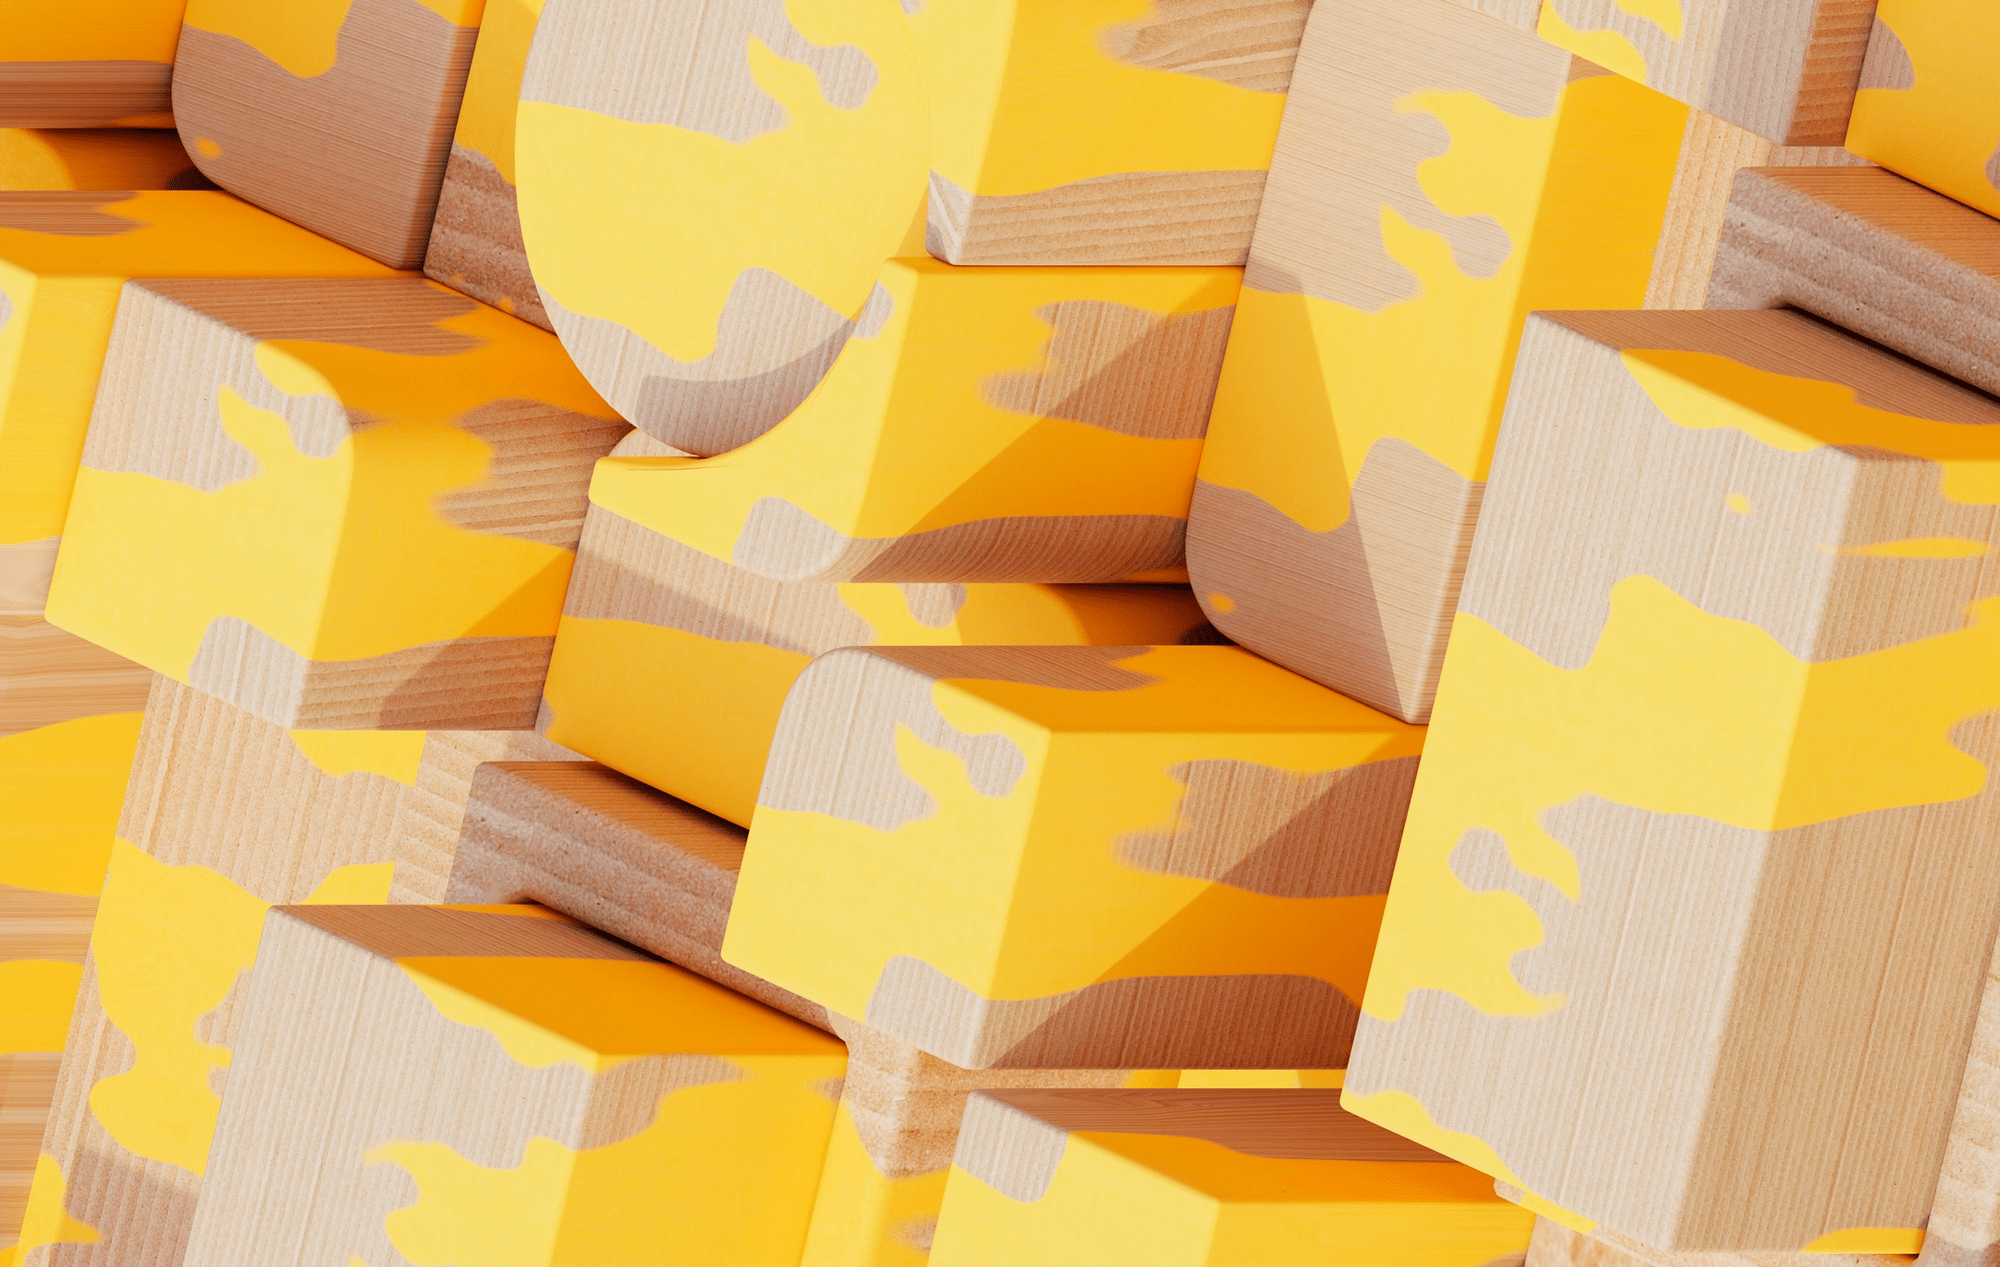 Custom-Printed Packaging Boxes